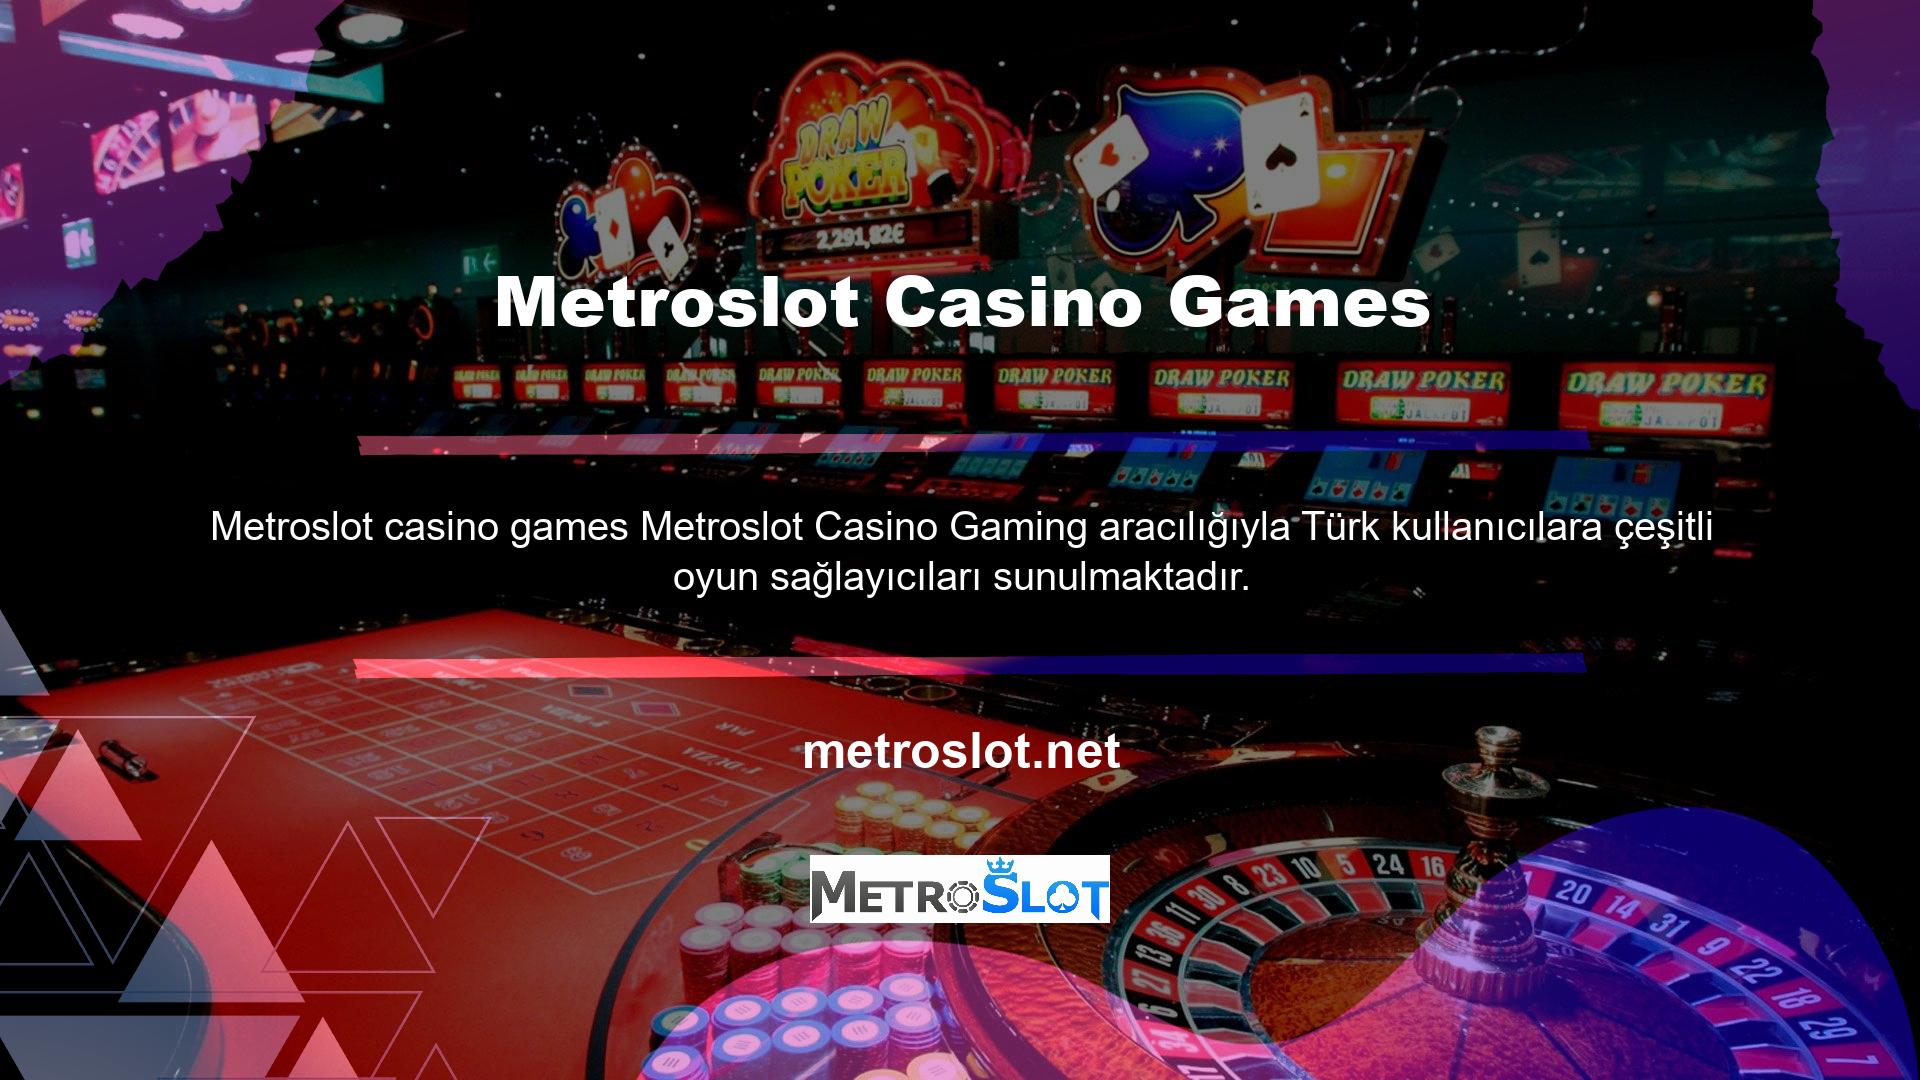 Spor Bahisleri, Canlı Casino ve Casino Slotları dahil olmak üzere çeşitli casino türleri